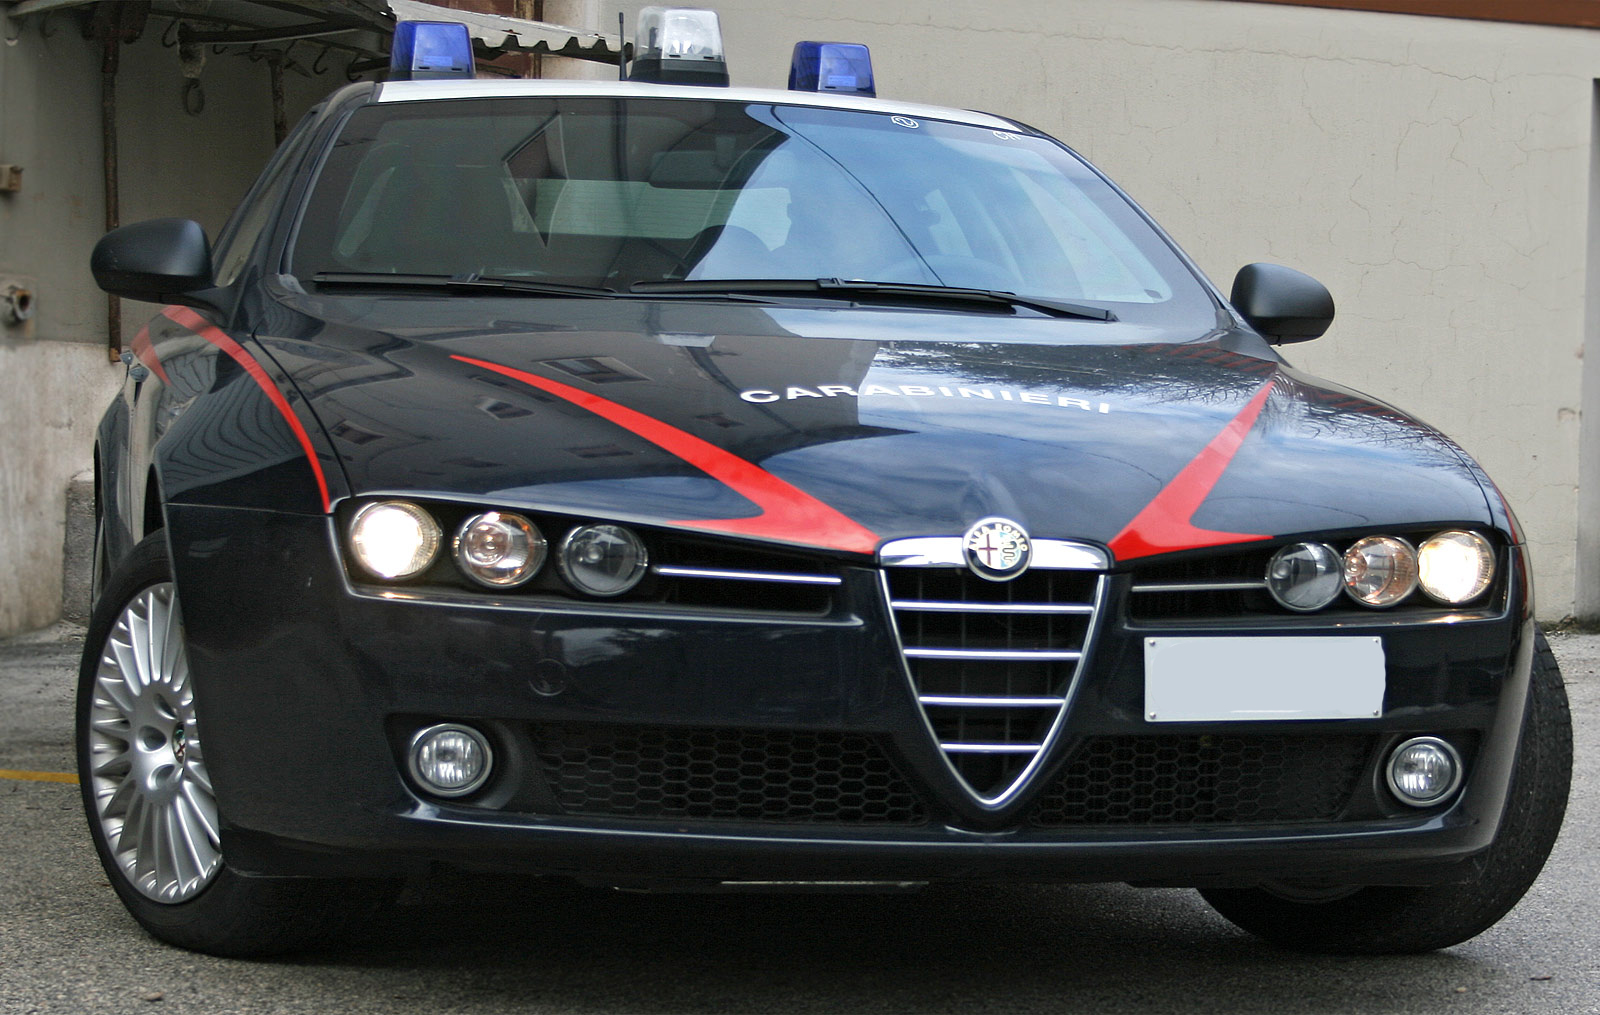 carabinieri arresto tentato omicidio femminicidio arresti domiciliari